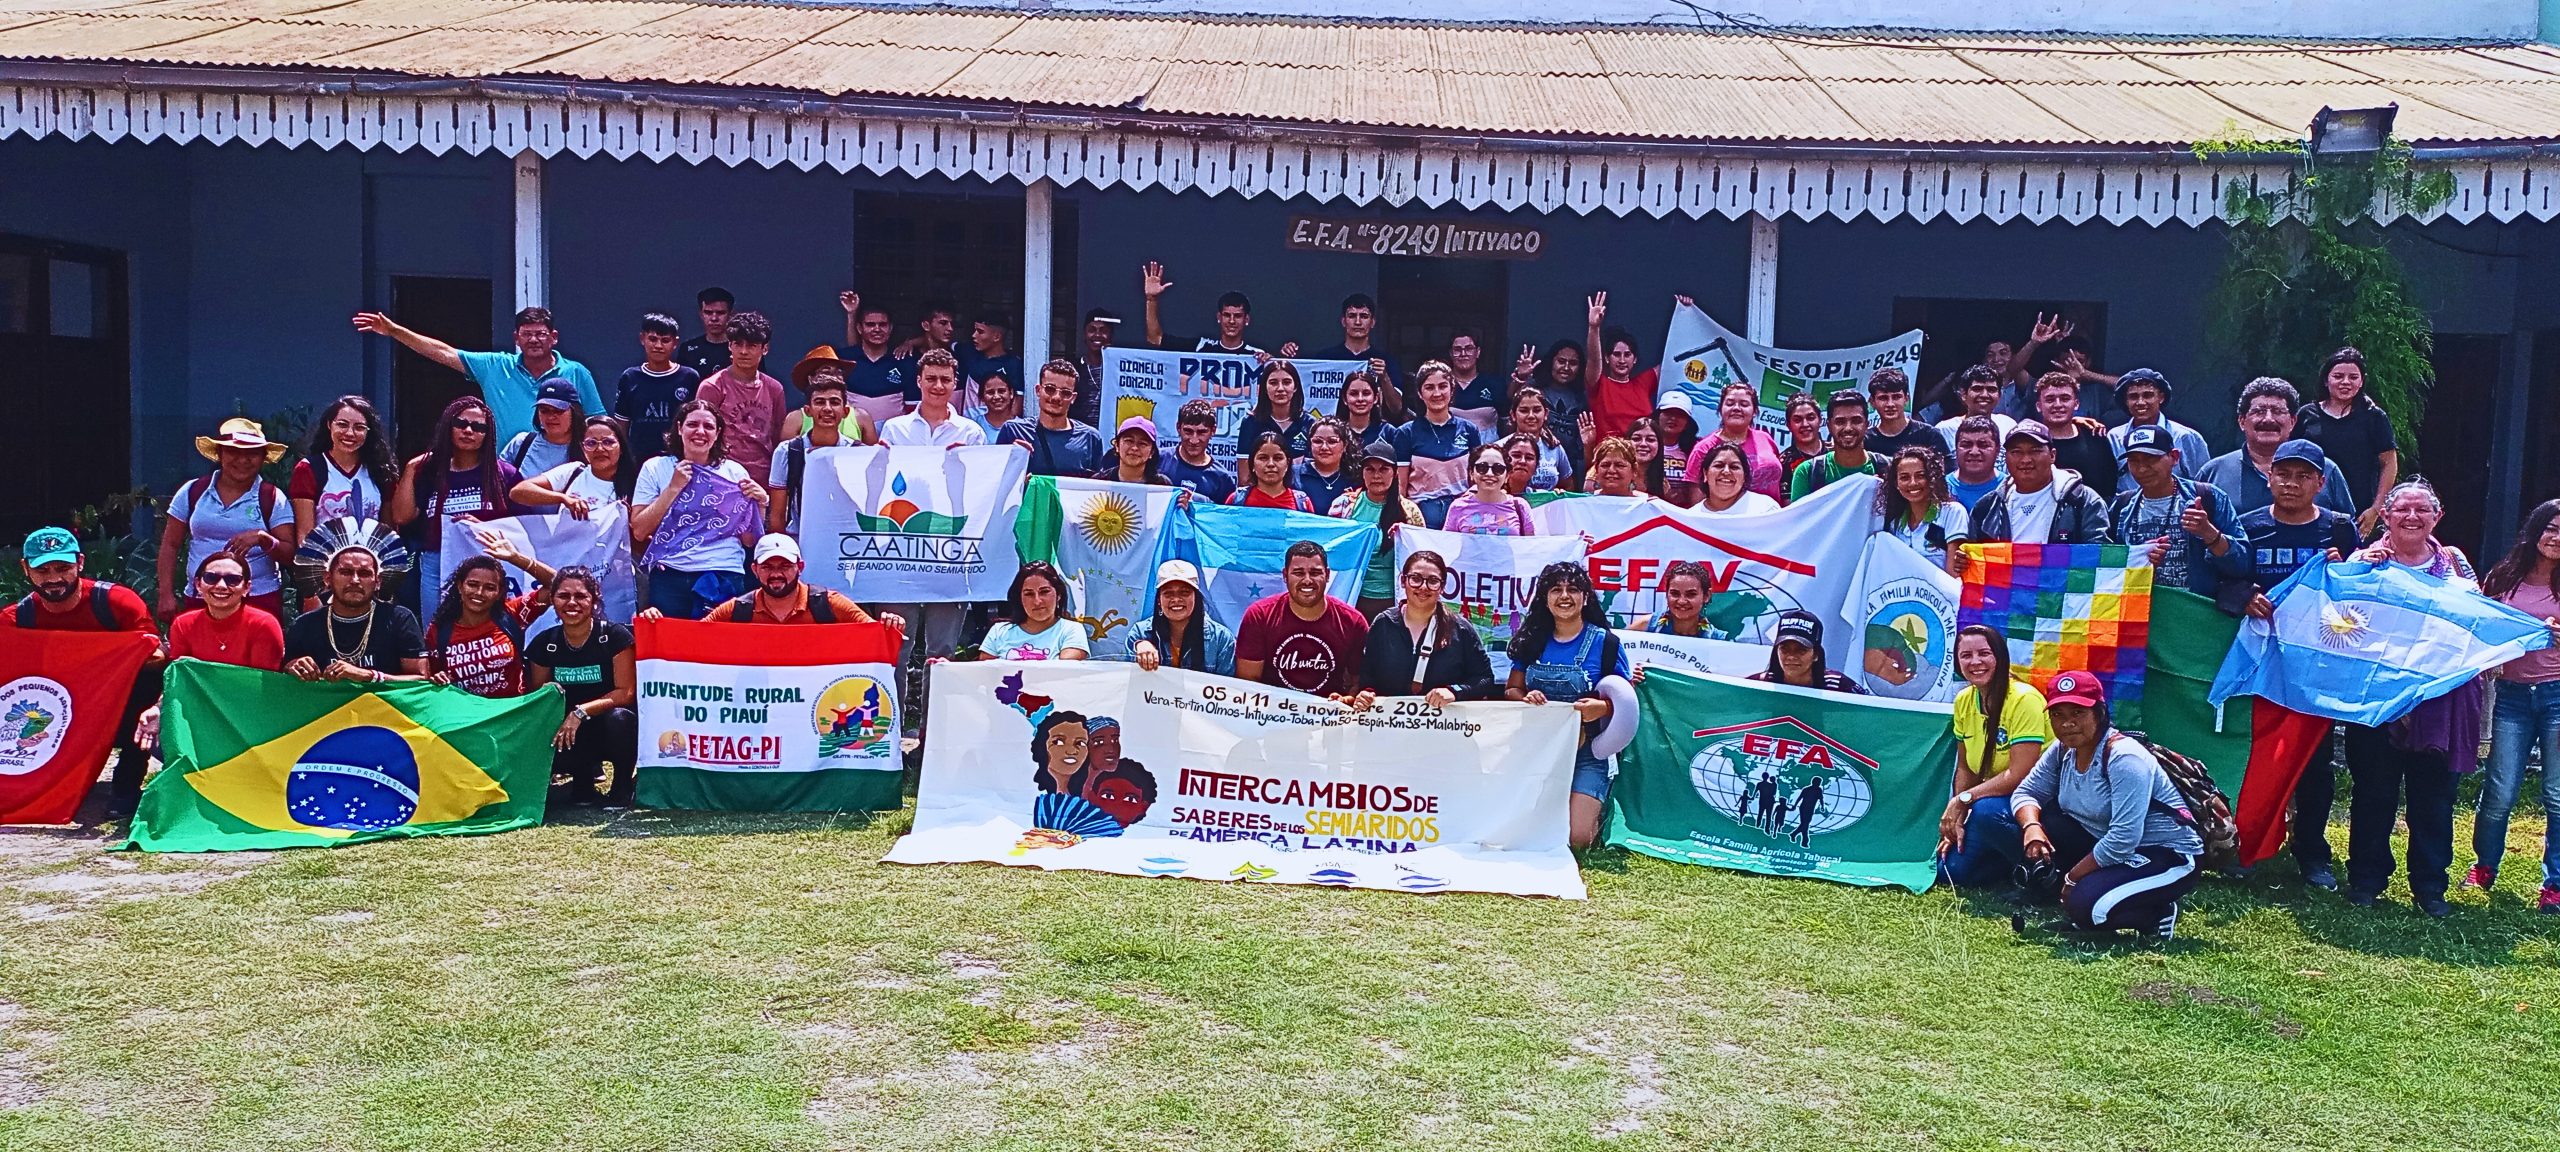 Jóvenes de las regiones semiáridas de América Latina lanzan una carta con demandas y propuestas para un futuro agroecológico